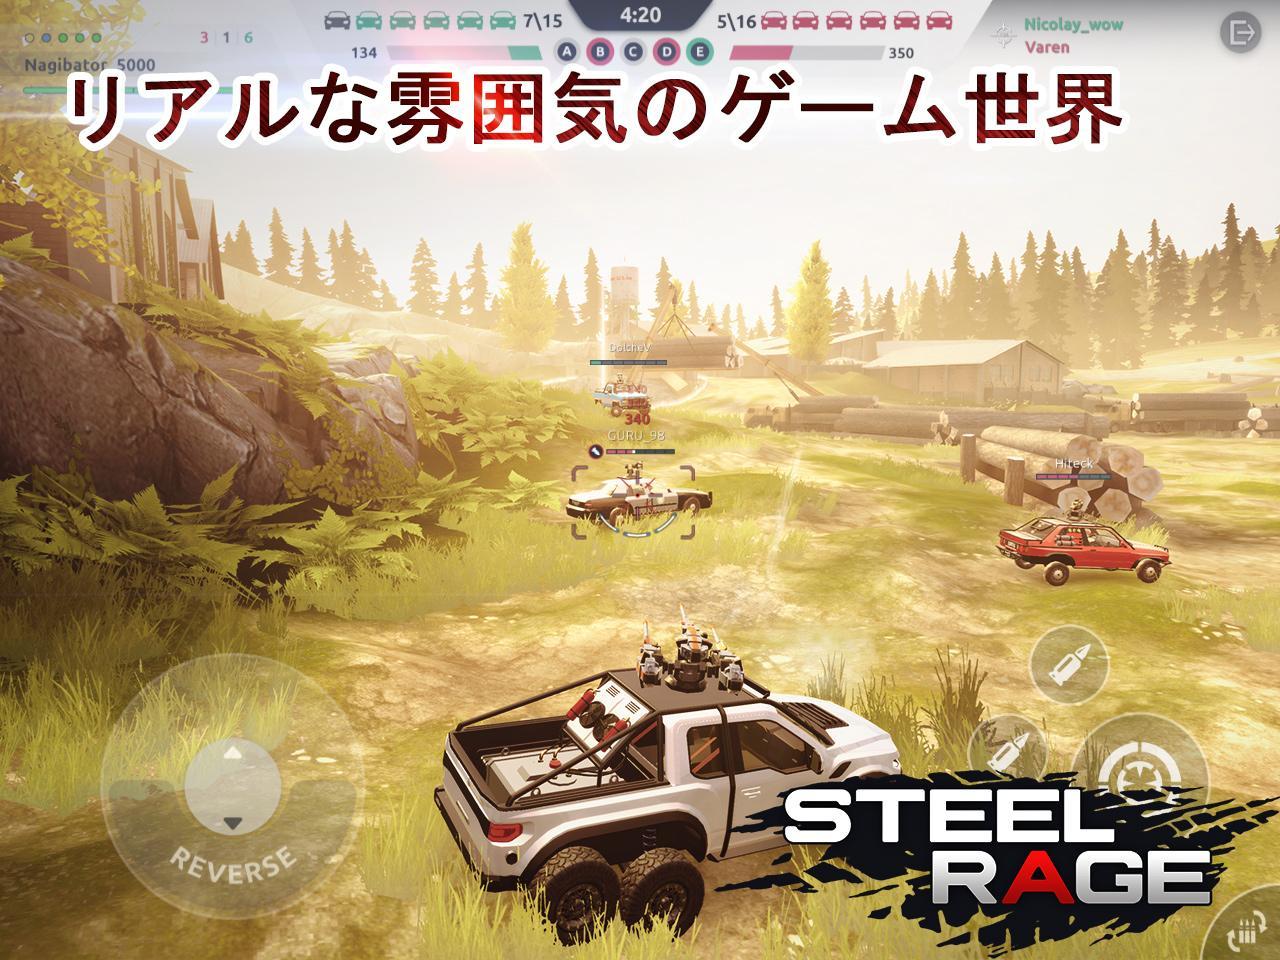 Steel Rage: ロボットカー 対戦シューティングのキャプチャ